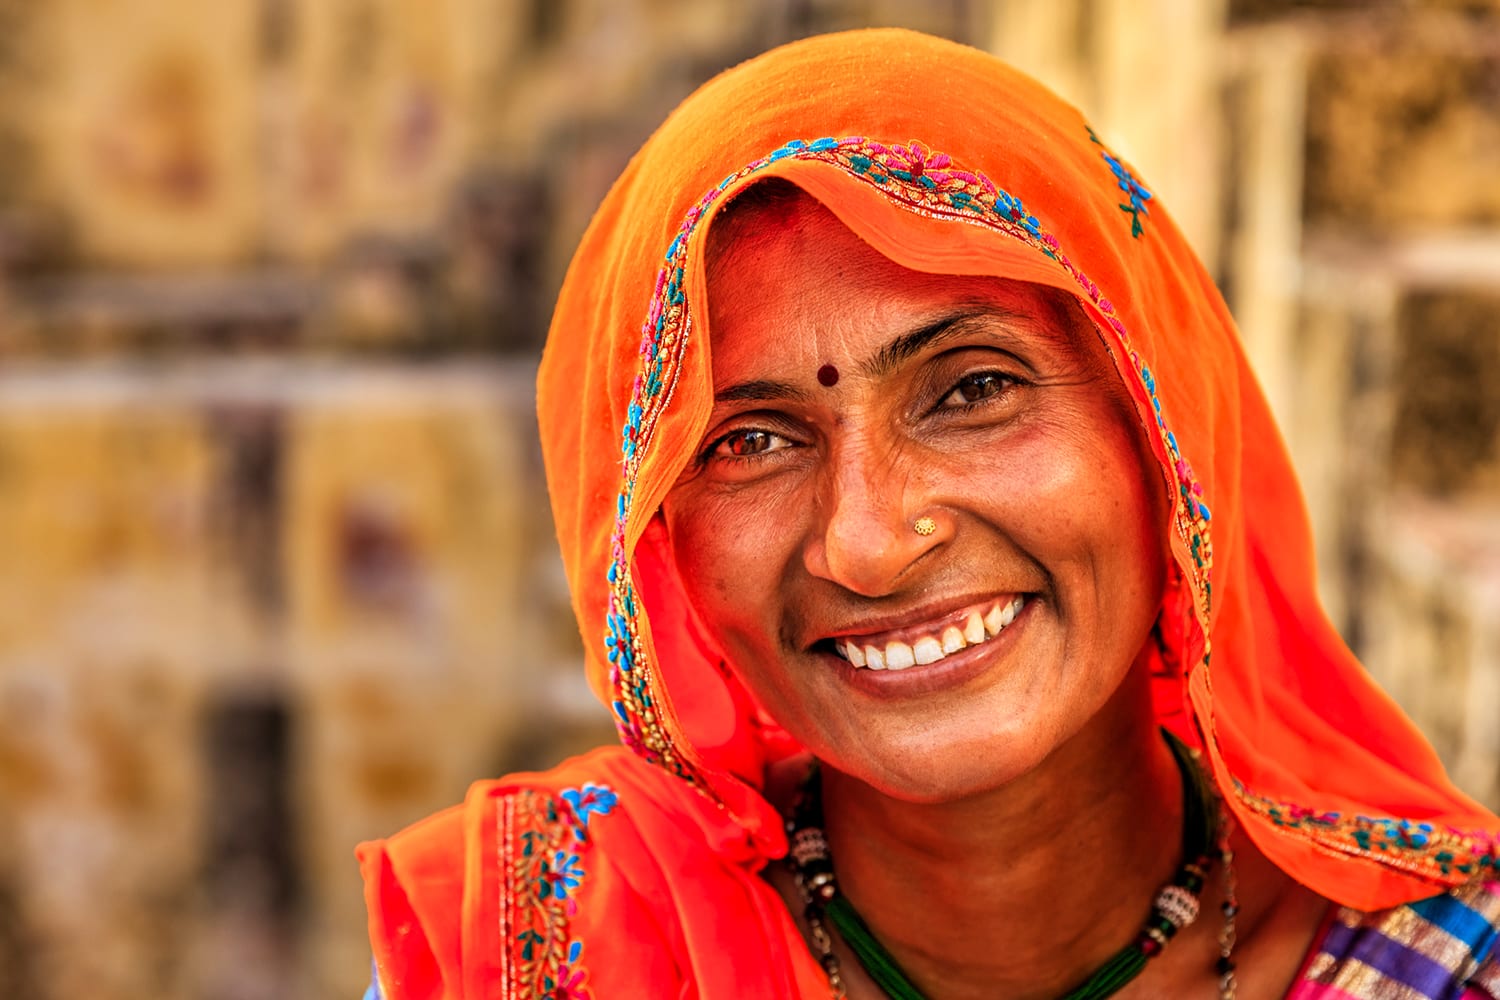 Indien Reisen - erleben Sie das Reich der Farben, Tempel und Paläste hautnah!